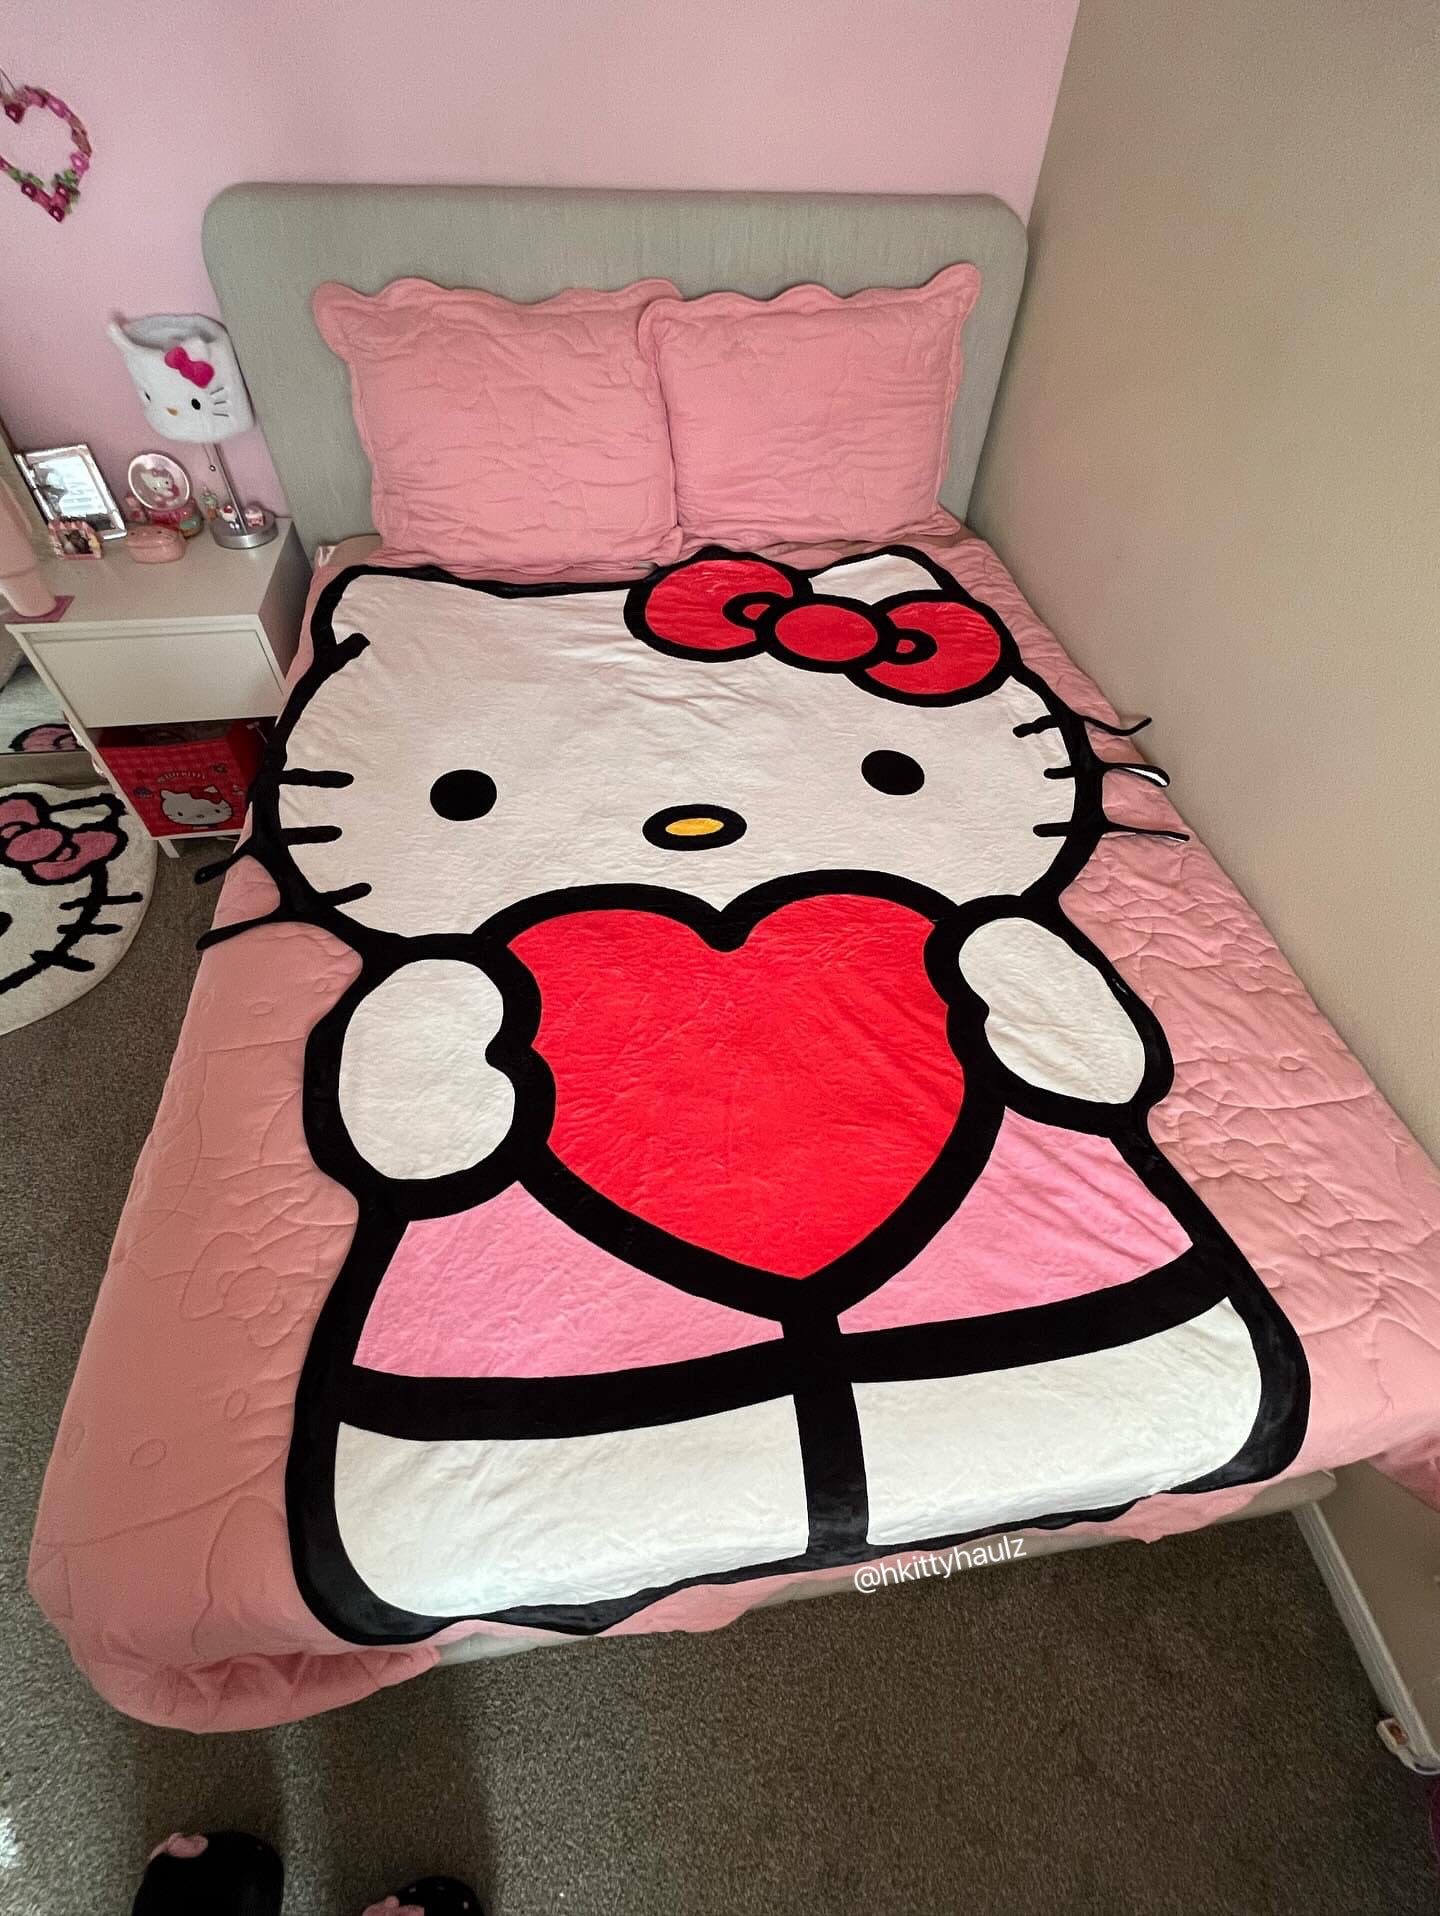 【Pre-order】KT Valentine Shape Blanket Flannel Throw Blanket Cute Blanket Lightweight Super Soft Cozy for Bed Kids Adult Valentine Gift